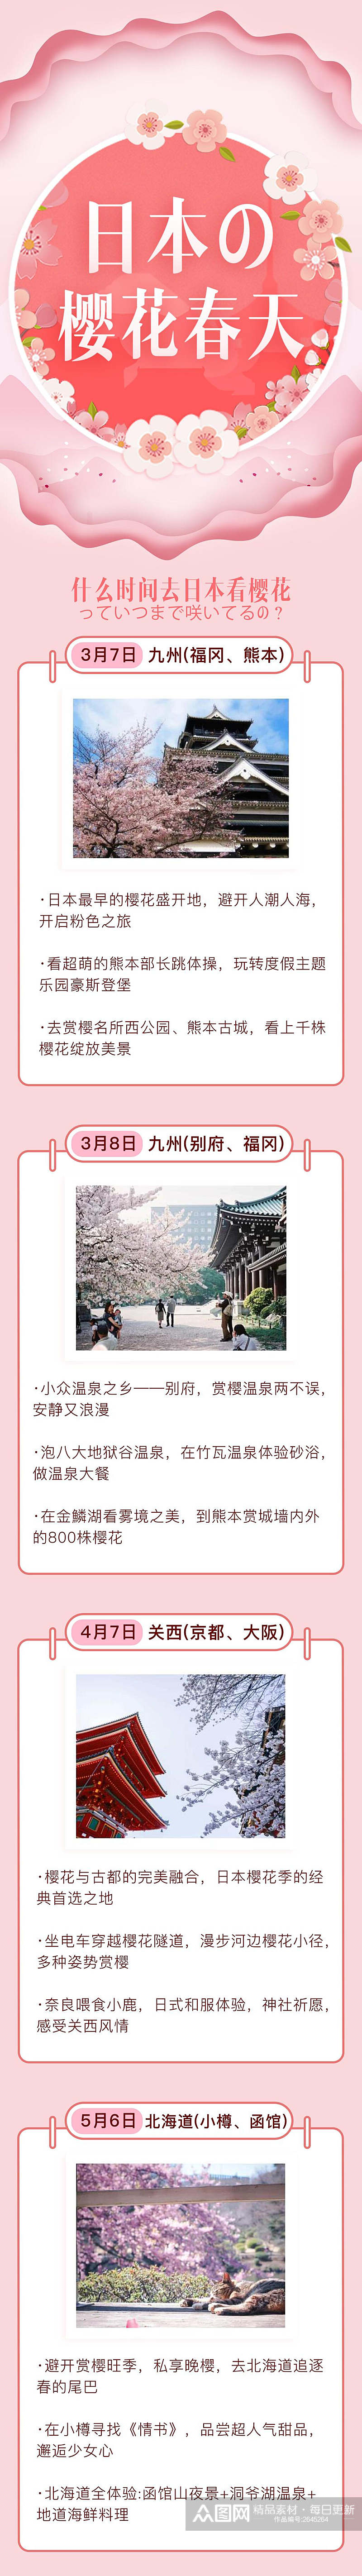 粉色日本樱花春天旅游信息H5长图素材